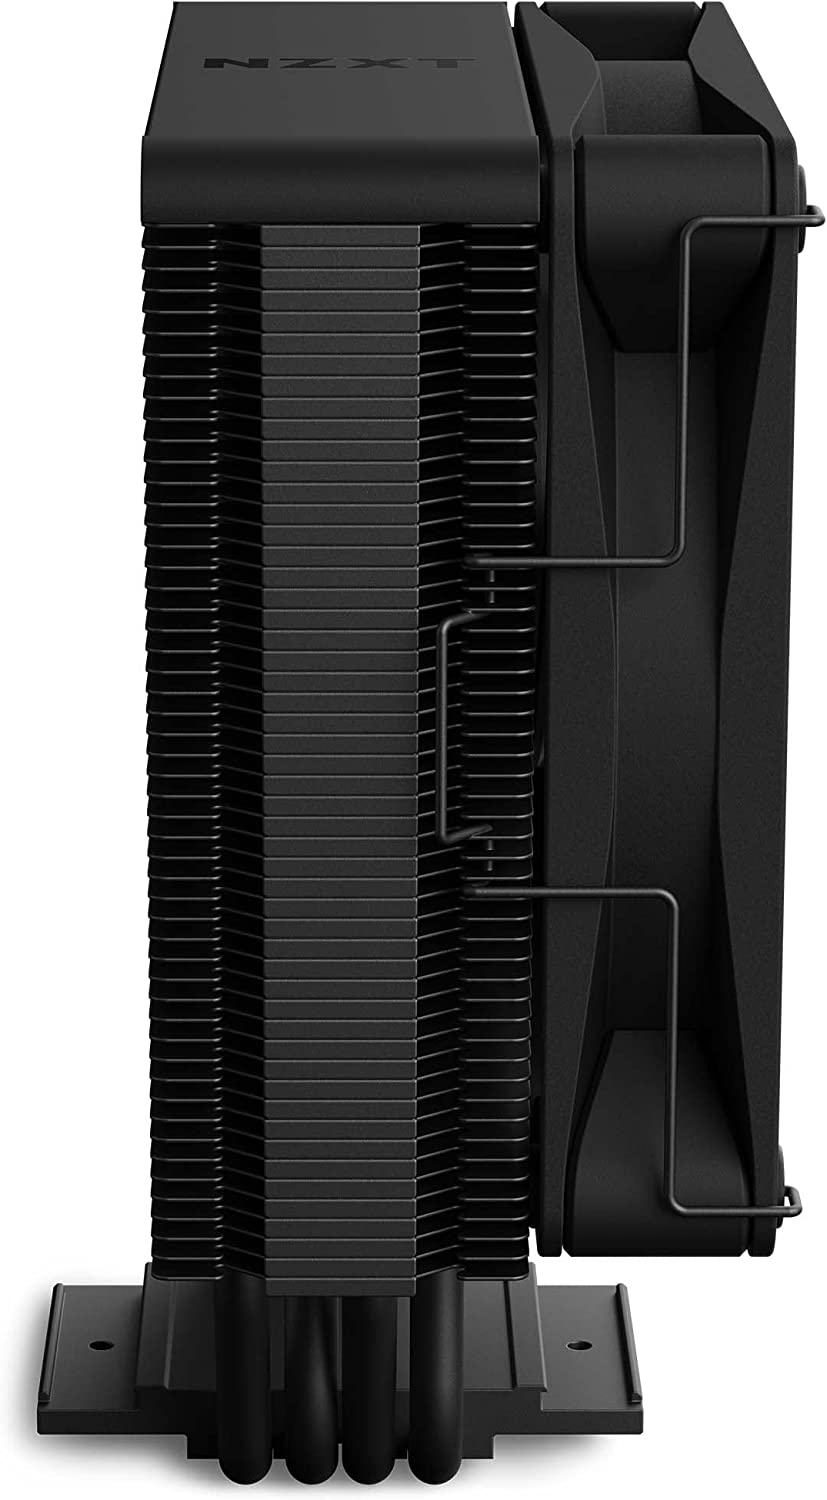 NZXT T120 BLACK PROCESSOR AIR COOLER-CPU COOLER-Makotek Computers